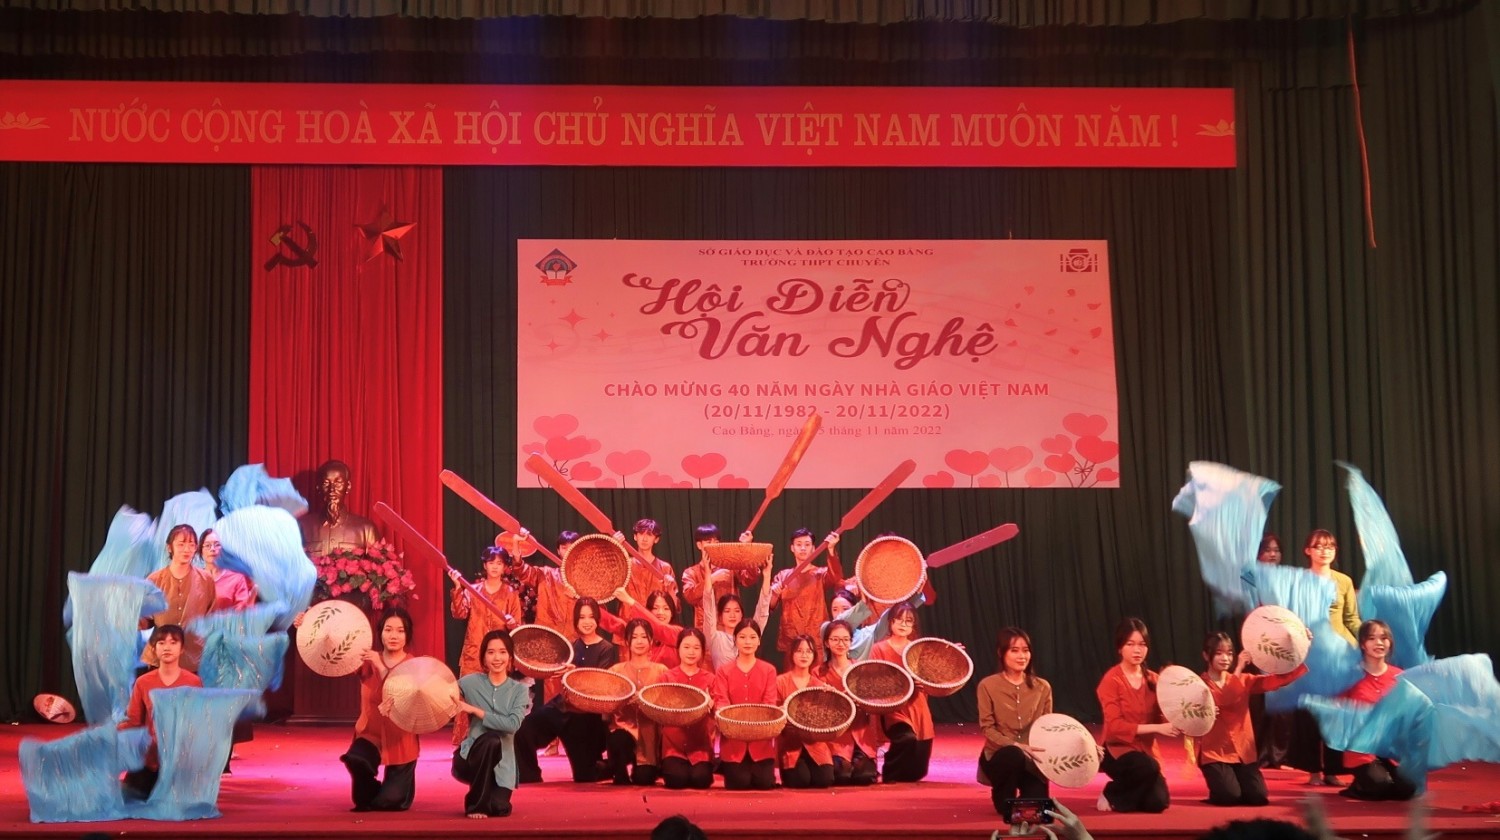 Hội diễn văn nghệ Chào mừng 40 năm ngày Nhà giáo Việt Vam 20-11 là hoạt động nổi bật trong chuỗi sự kiện kỷ niệm. Với sự tham gia đông đảo của cộng đồng giáo viên và học sinh, chương trình hứa hẹn mang đến cho khán giả một đêm nhạc sôi động, cùng những góc nhìn đa dạng về tình yêu và lòng biết ơn đối với những người làm nên giáo dục Việt Nam.